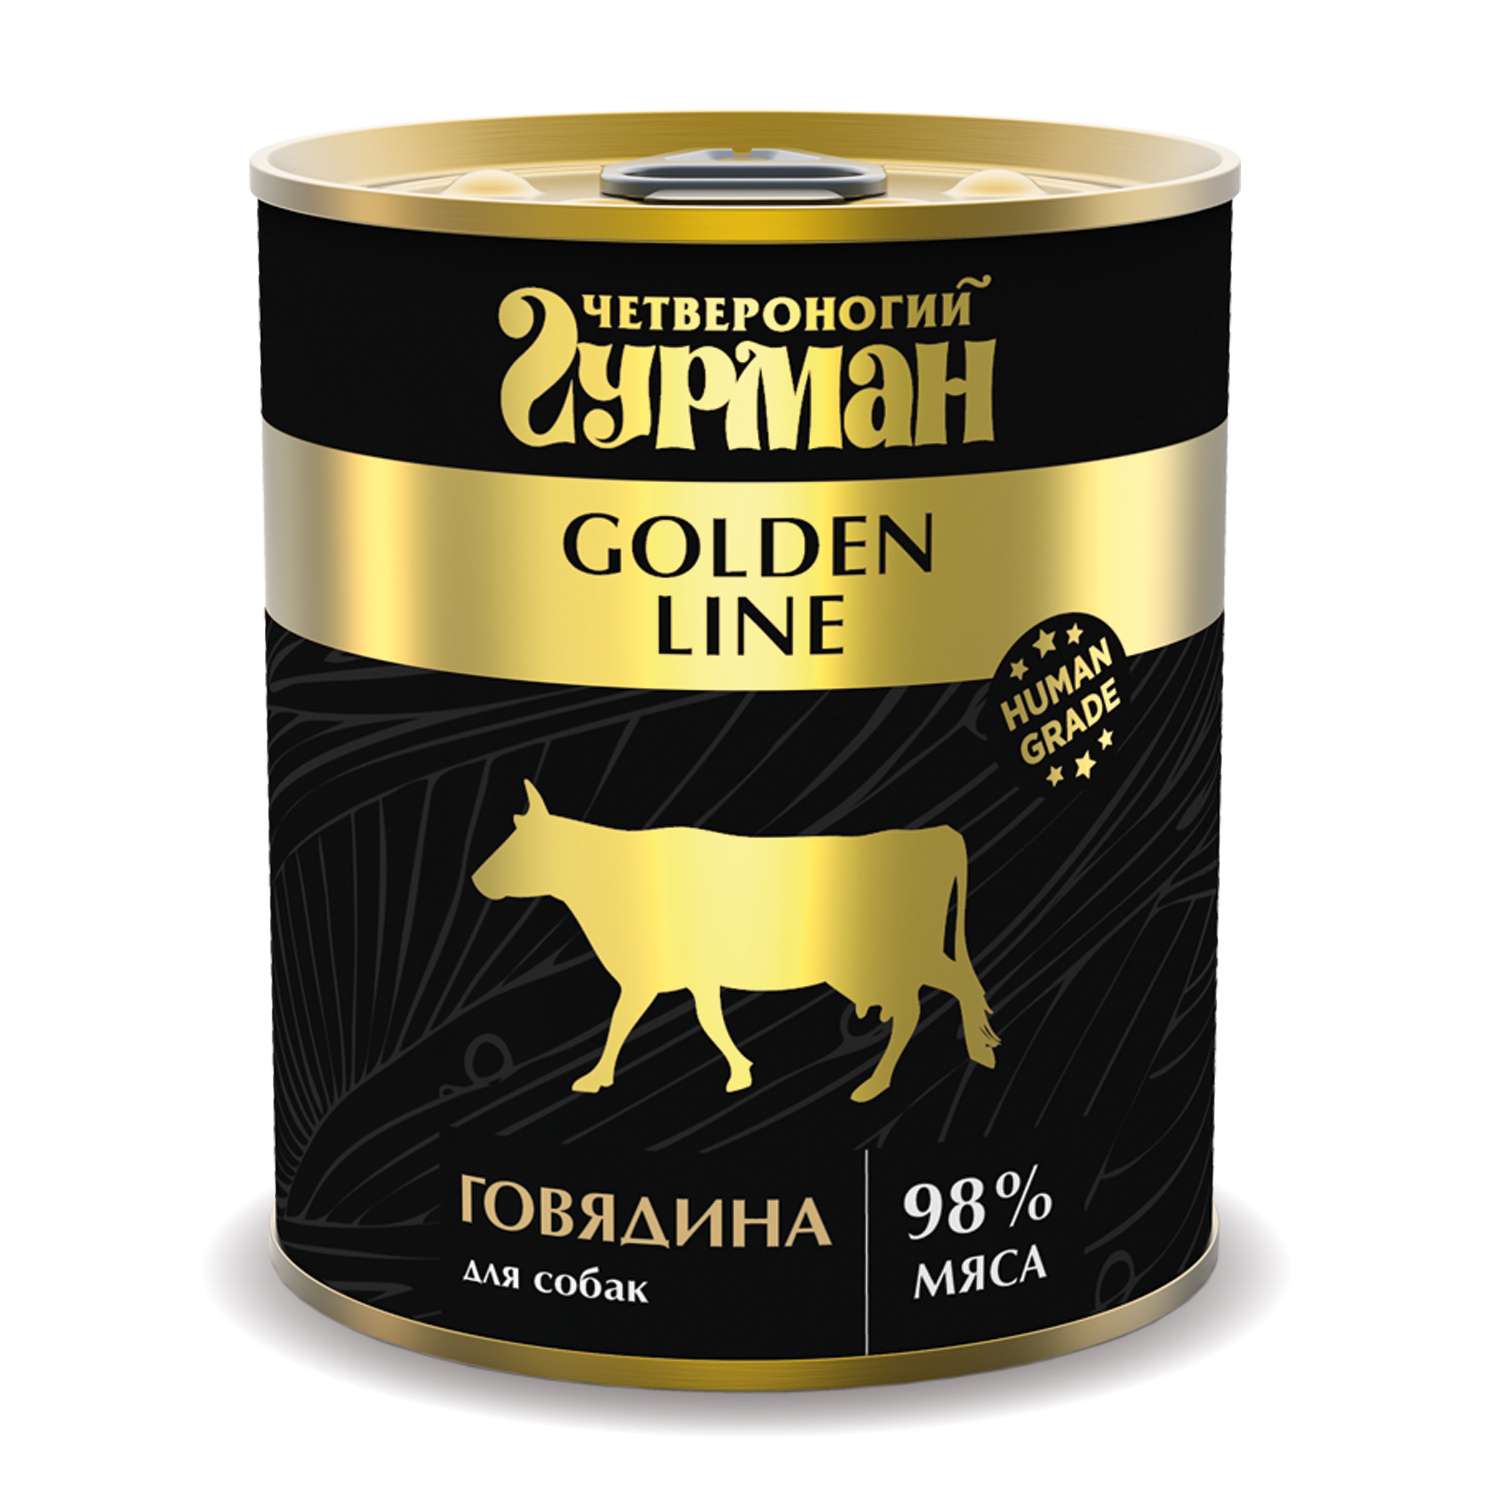 Корм для собак Четвероногий Гурман Golden говядина натуральная в желе 340г - фото 1